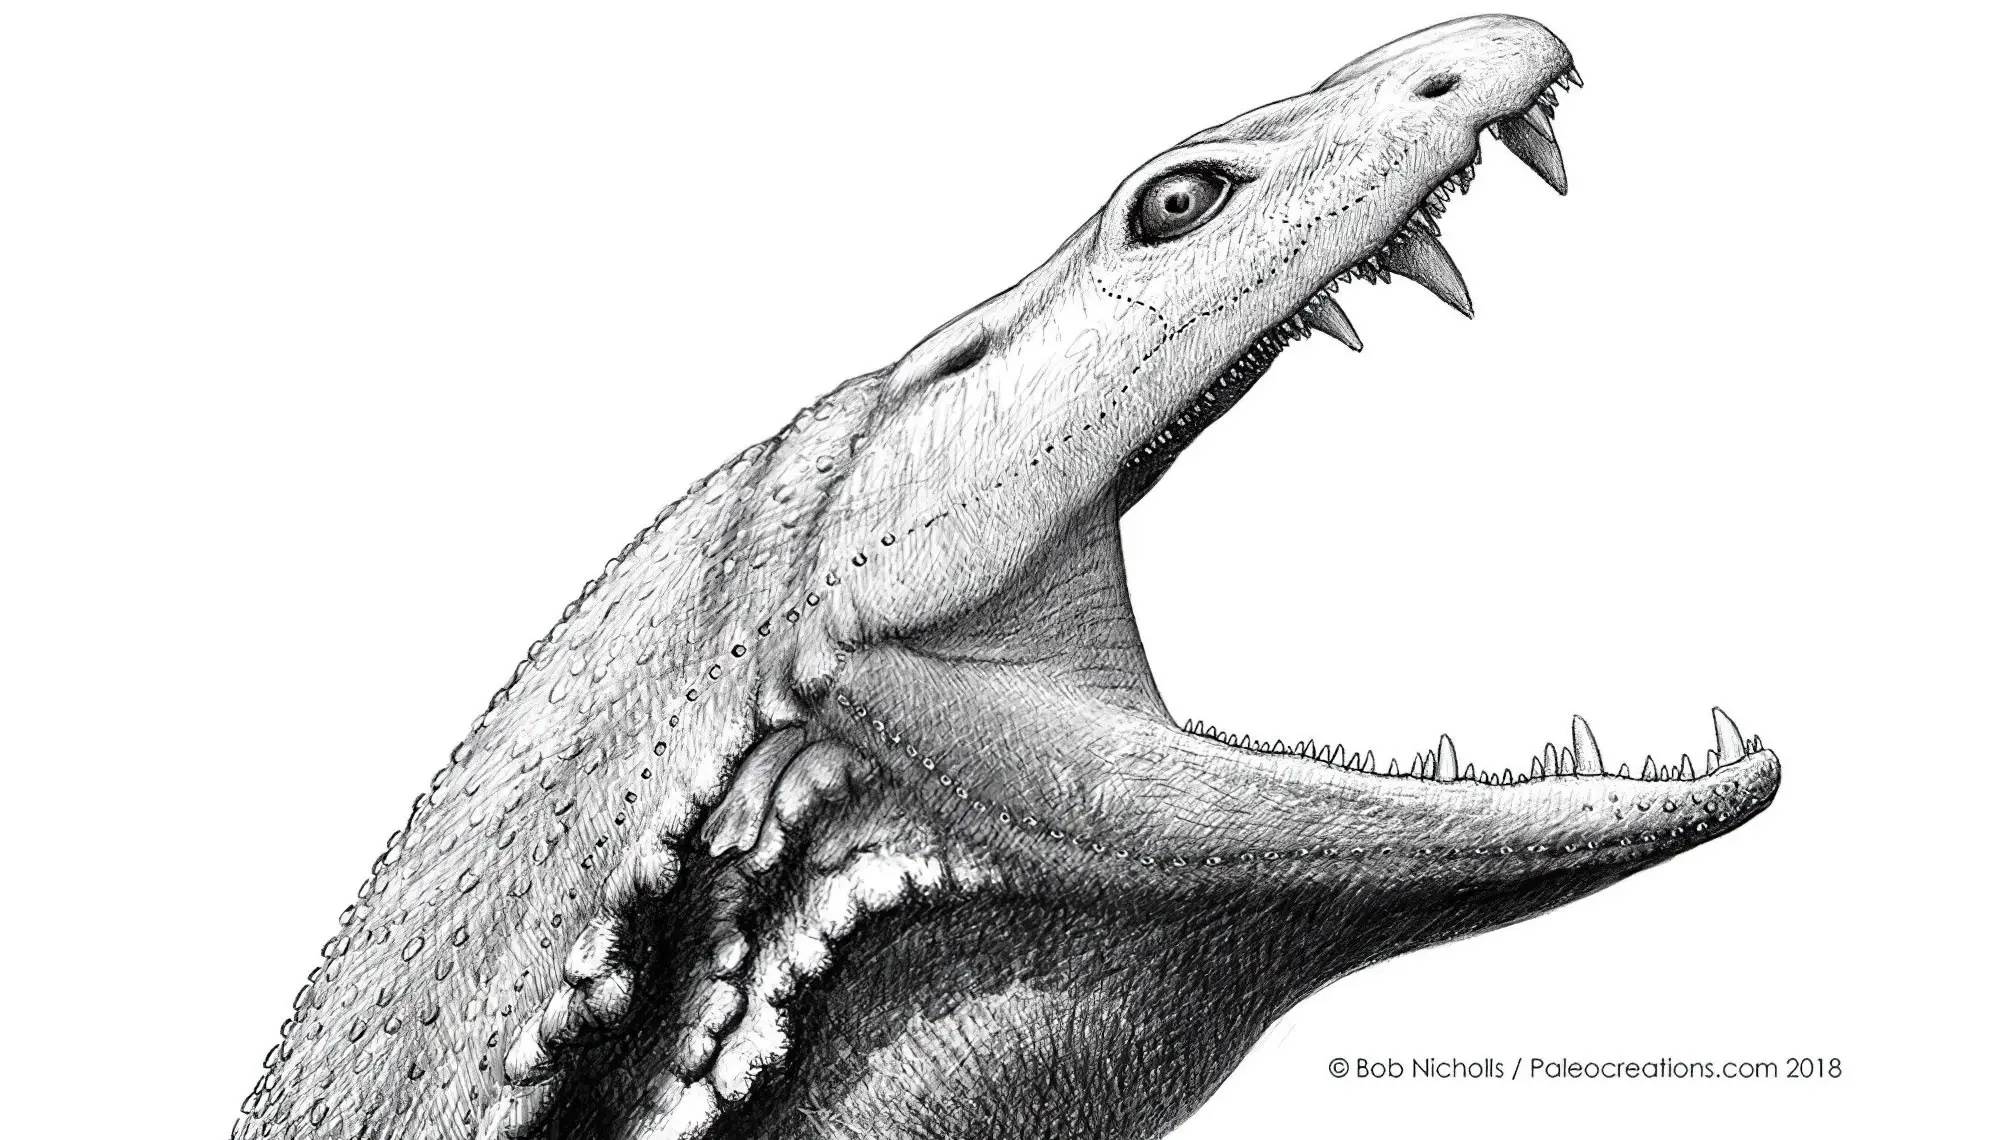 Crassigyrinus scoticus живеел пред 330 милиони години во мочуриштата на денешна Шкотска и Северна Америка.